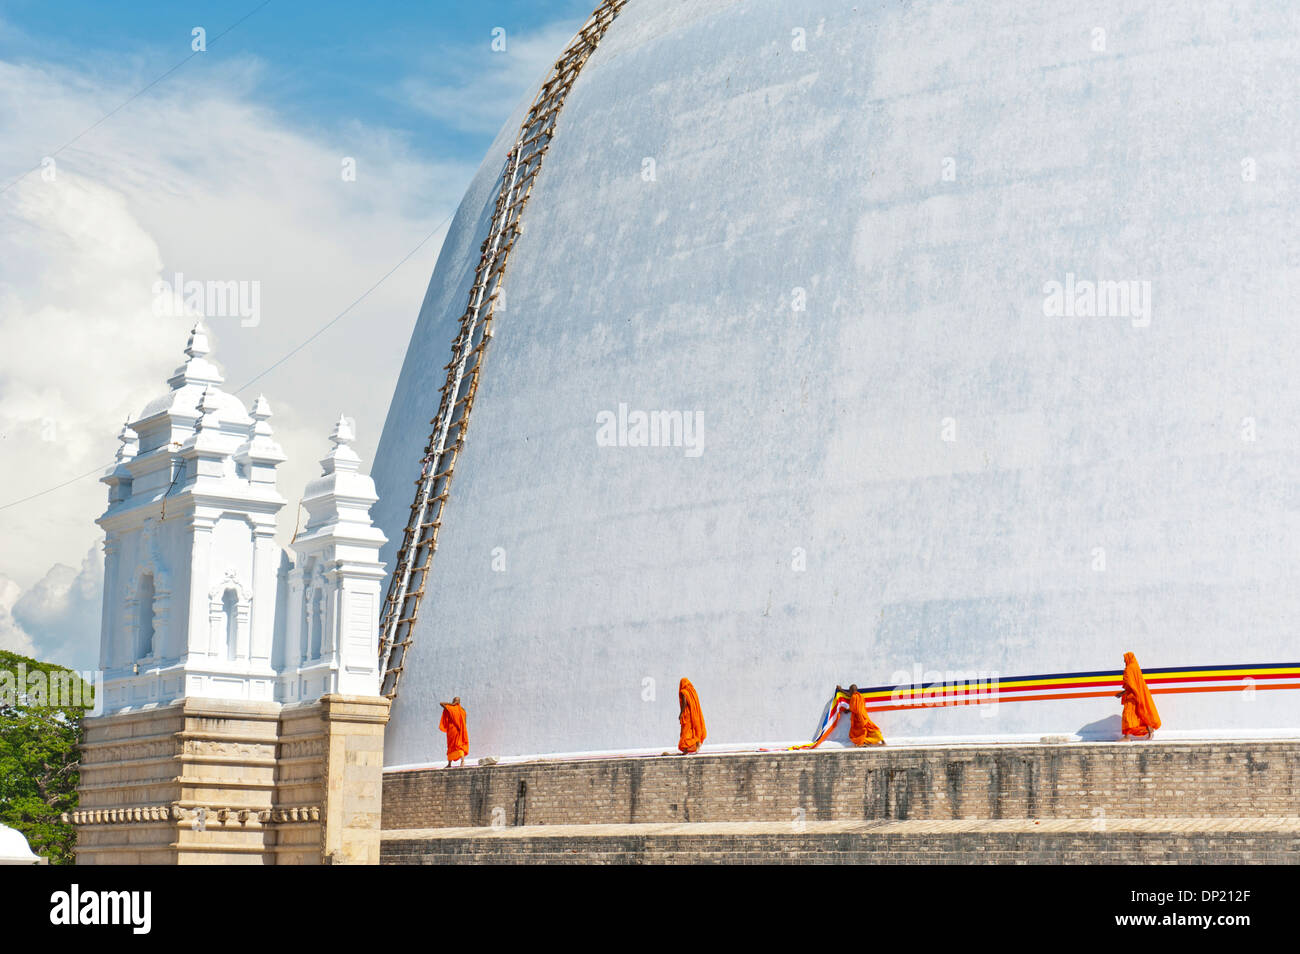 Mönche binden ein Tuch um eine große weiße Stupa, Ruwanwelisaya Dagoba, Anuradhapura, Sri Lanka Stockfoto